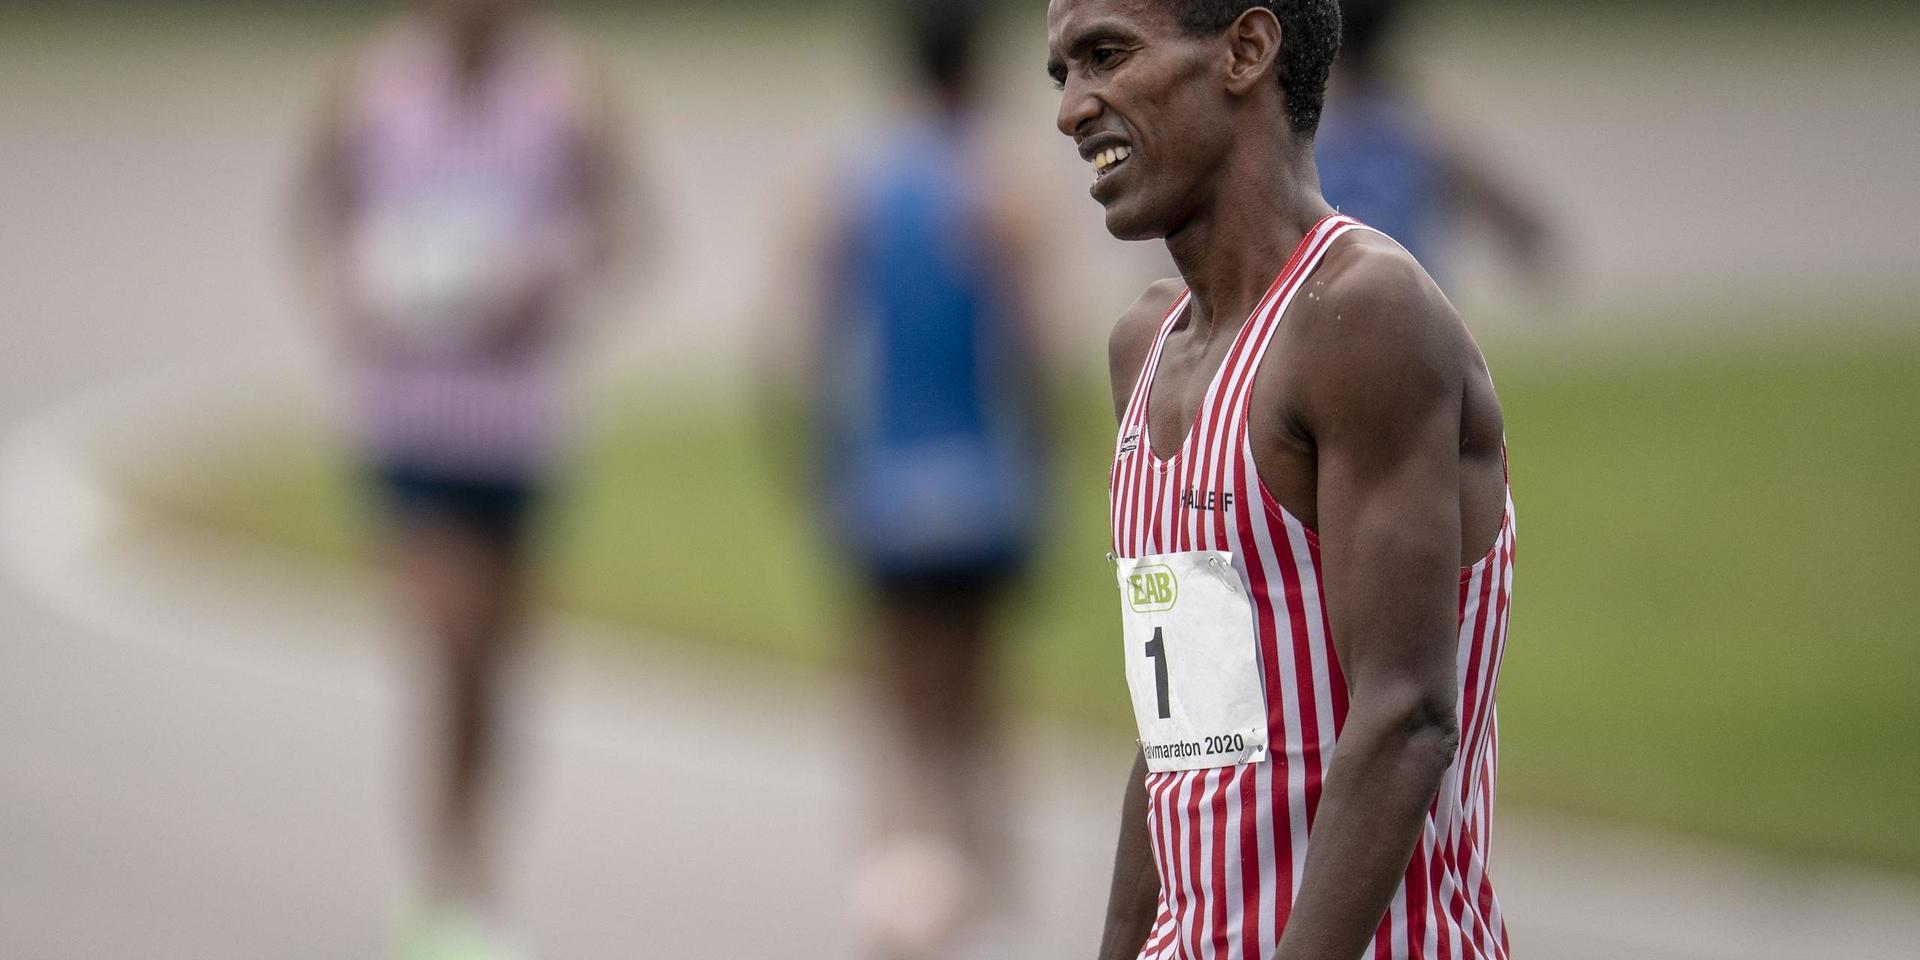 Mustafa 'Musse' Mohamed kom på tredje plats i herrarnas SM i halvmaraton på Anderstorp motorbana tidigare i somras.